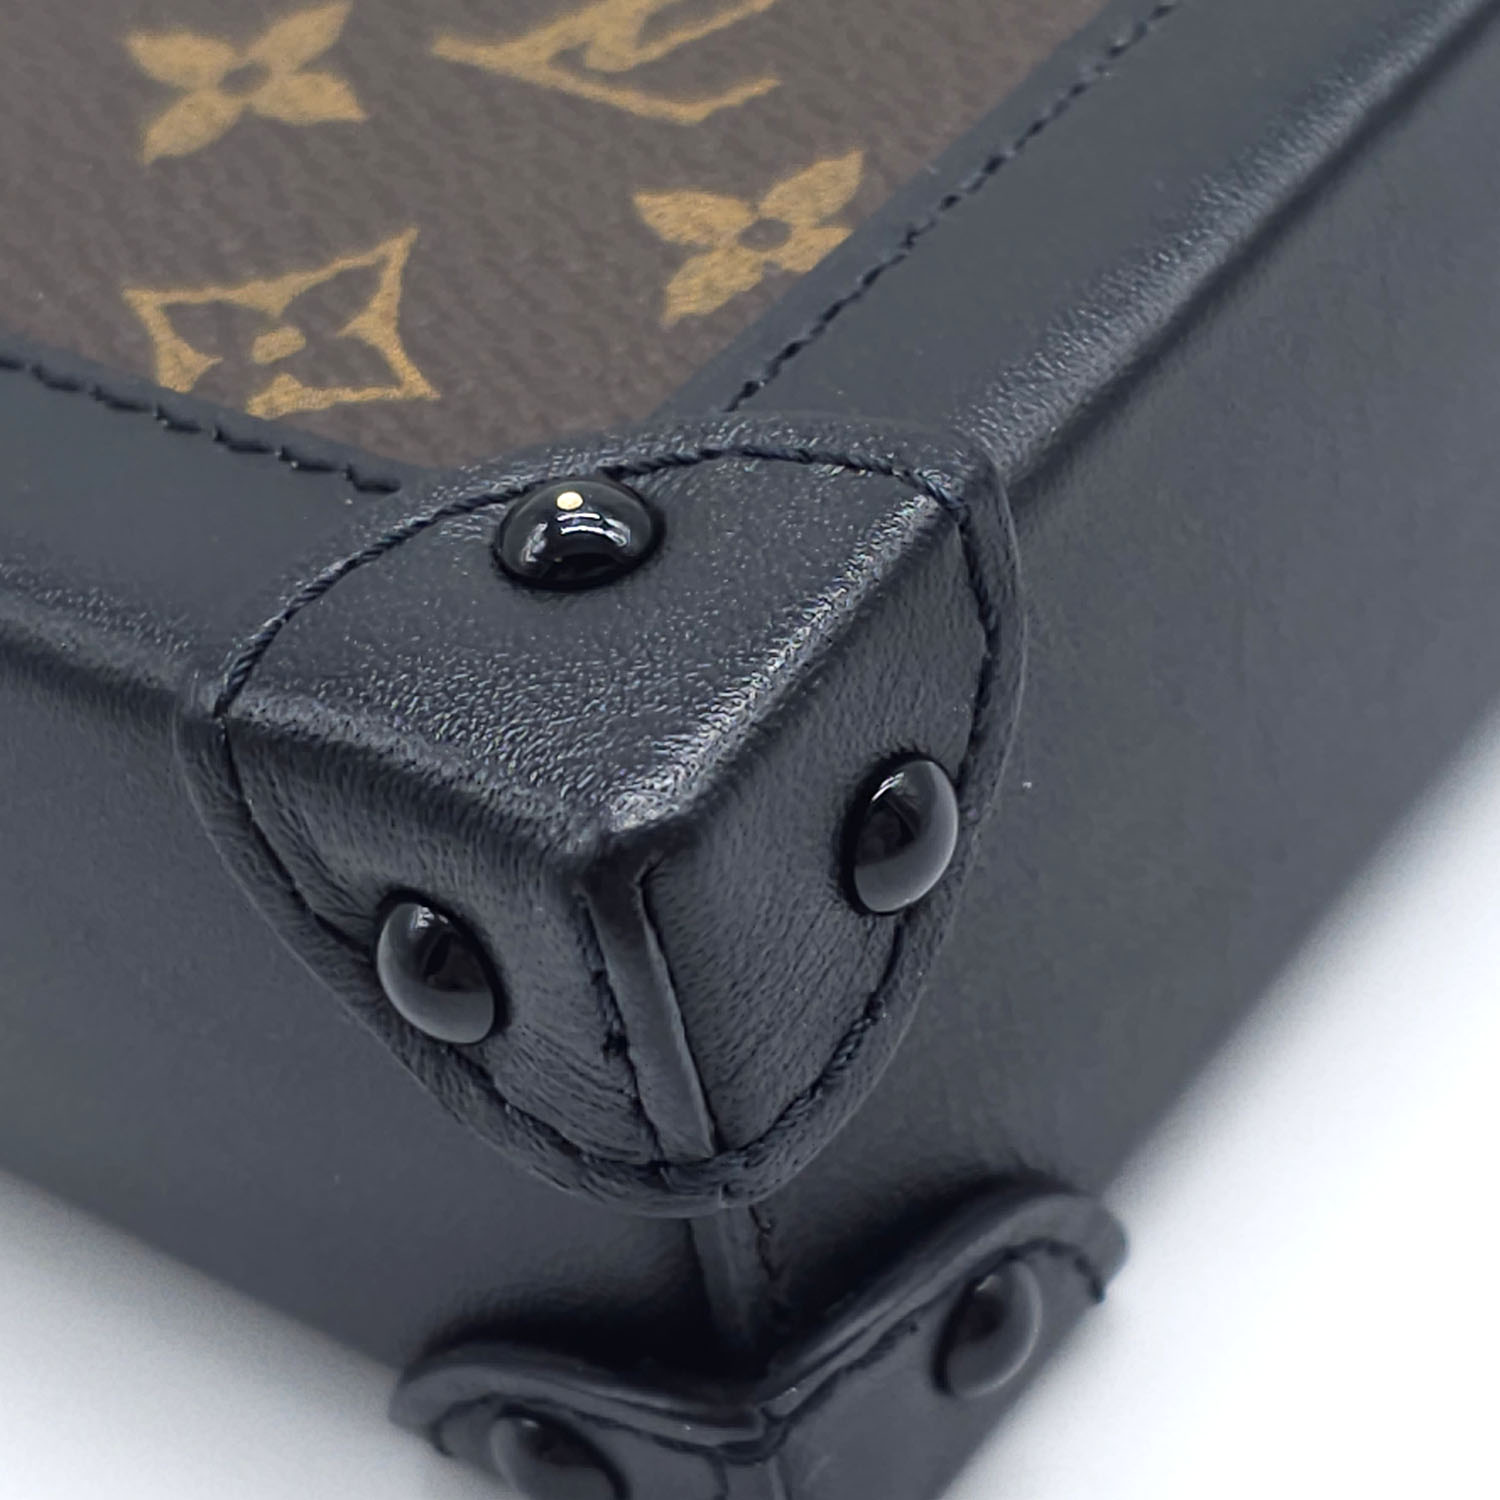 Shop Louis Vuitton Vertical trunk pochette (M63913) by design◇base